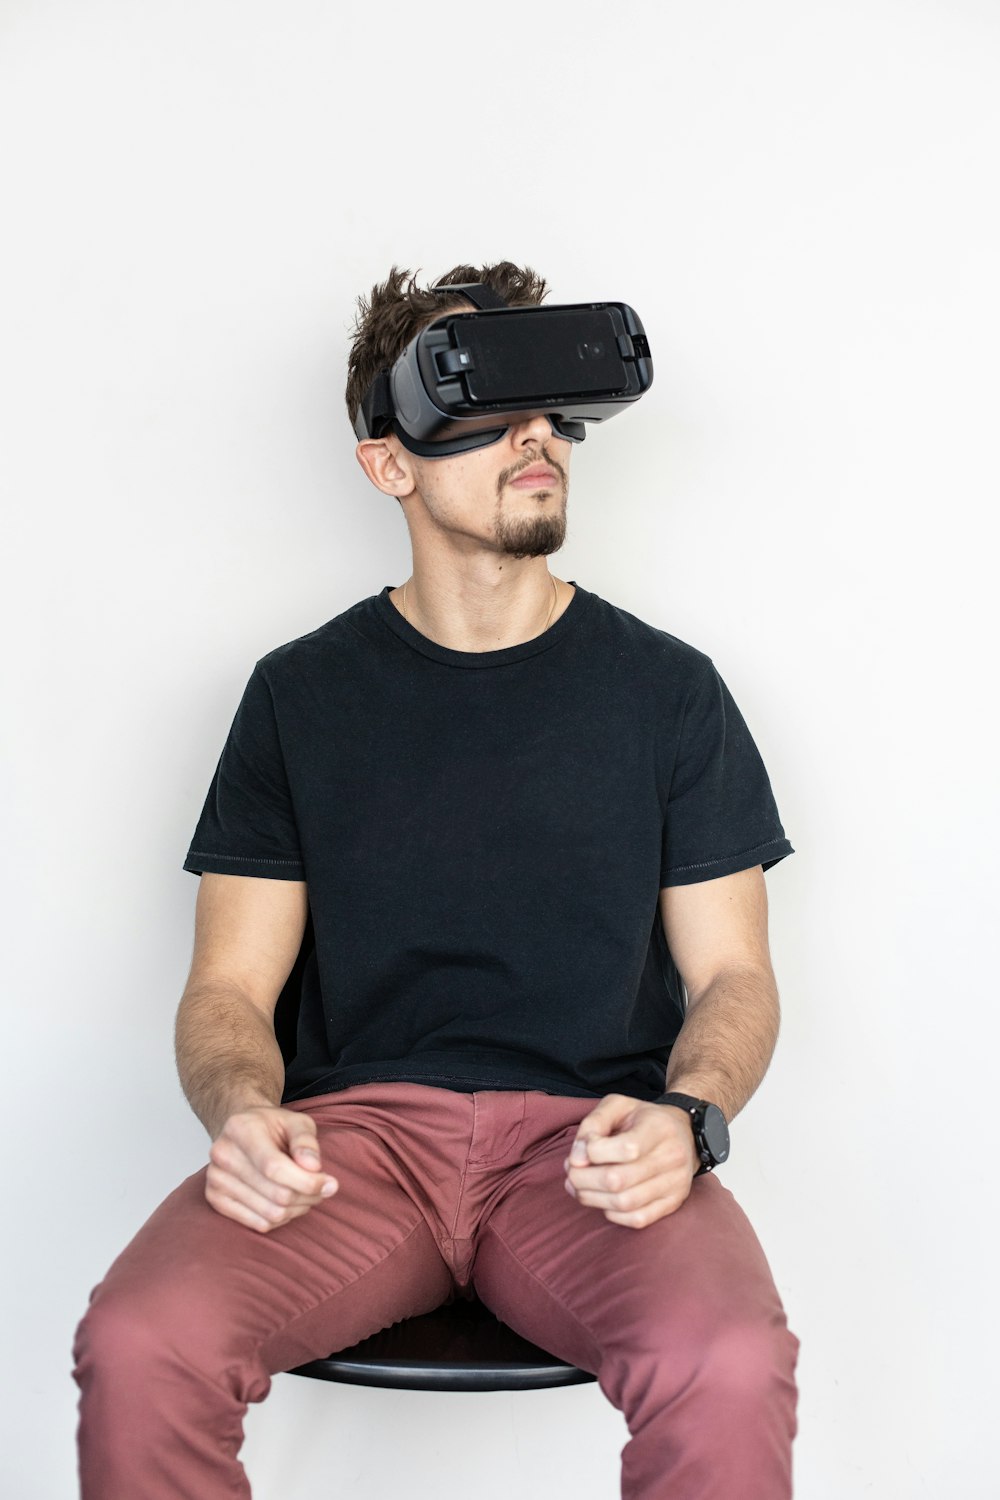 homem sentado e usando fone de ouvido de realidade virtual preto